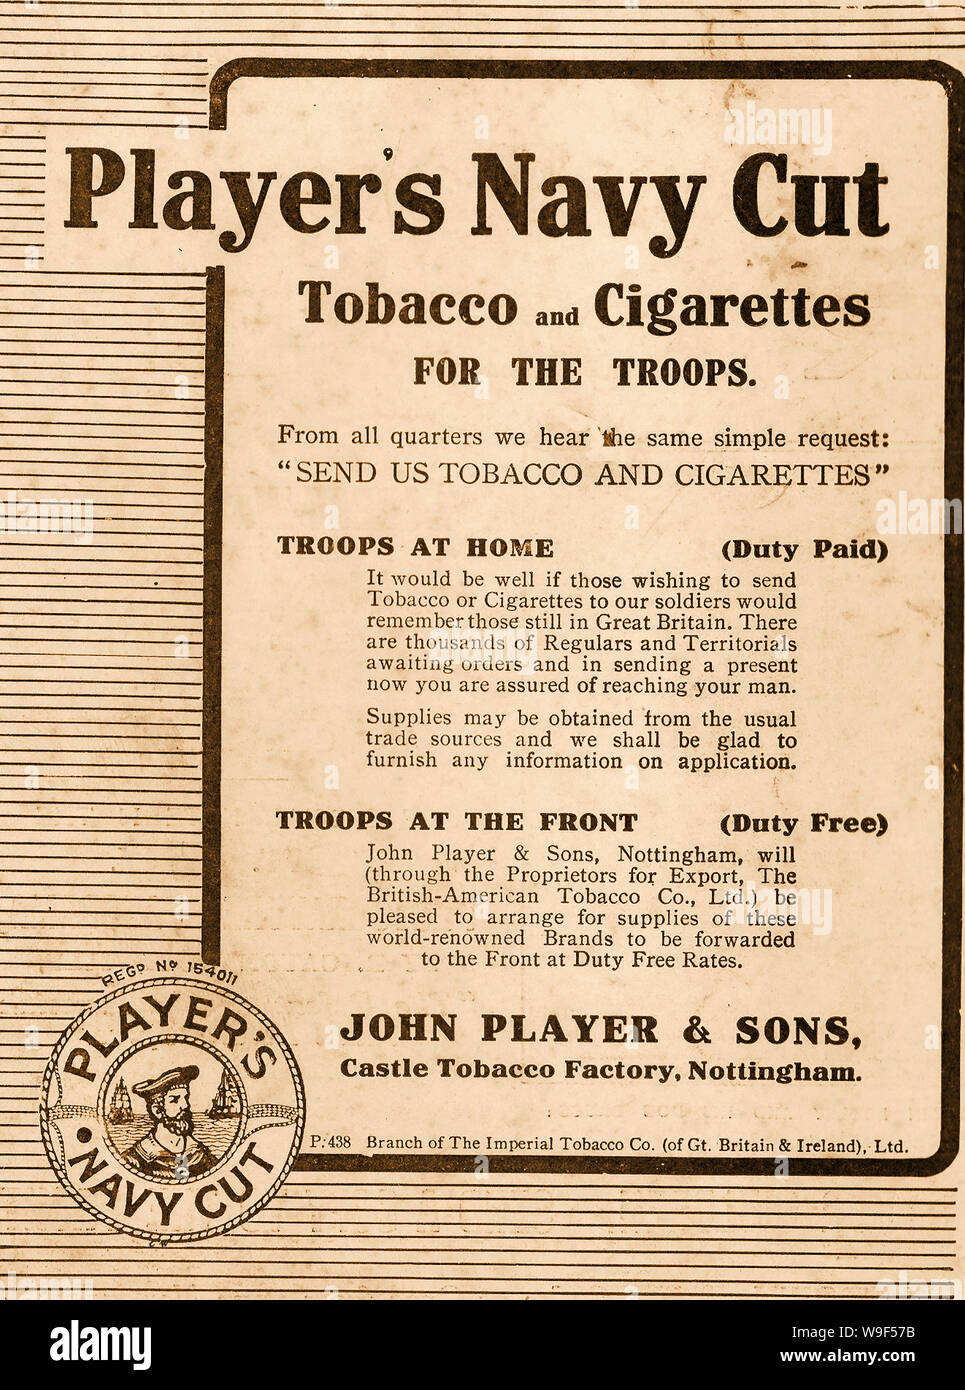 La prima guerra mondiale - Un 1915 British Spot per i giocatori navy sigarette - tabacchi per le truppe,dazio corrisposto o duty free Foto Stock